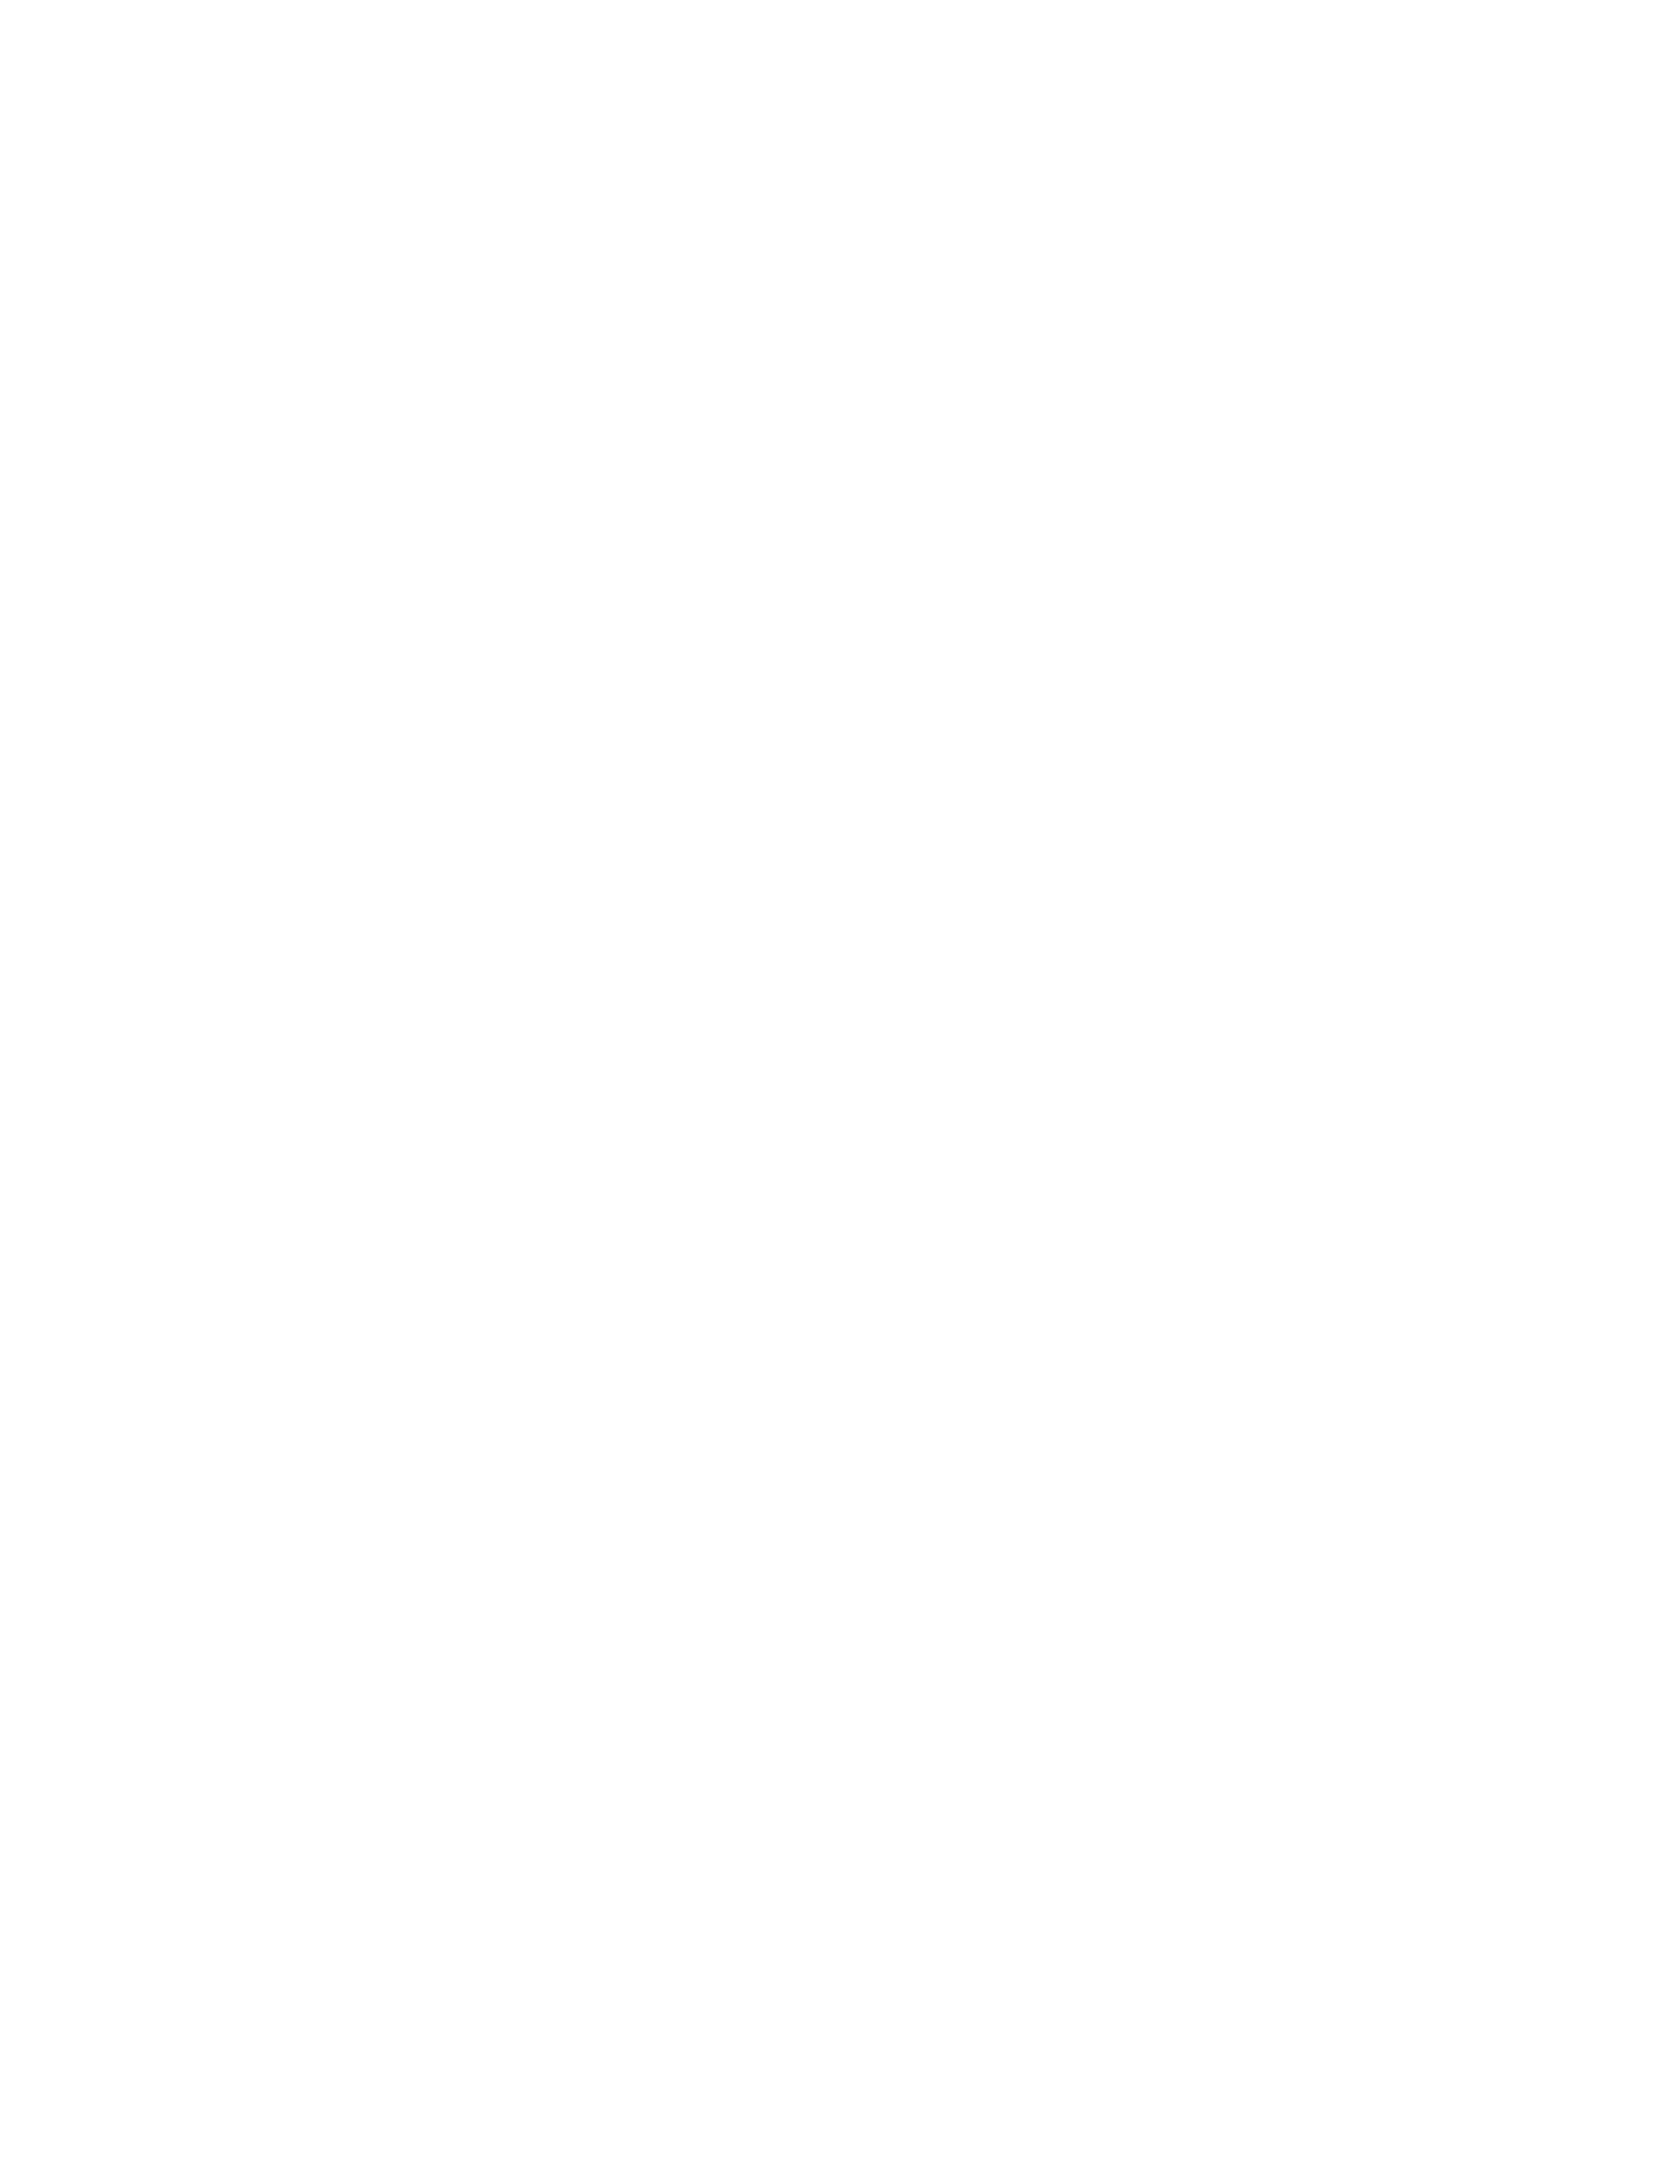 девушка лежит на диване необычные розовые очки розовые перчатки фешн высокая мода бархатный синий диван студия профессиональный фотограф Ксения Исмаил Санкт-Петербург